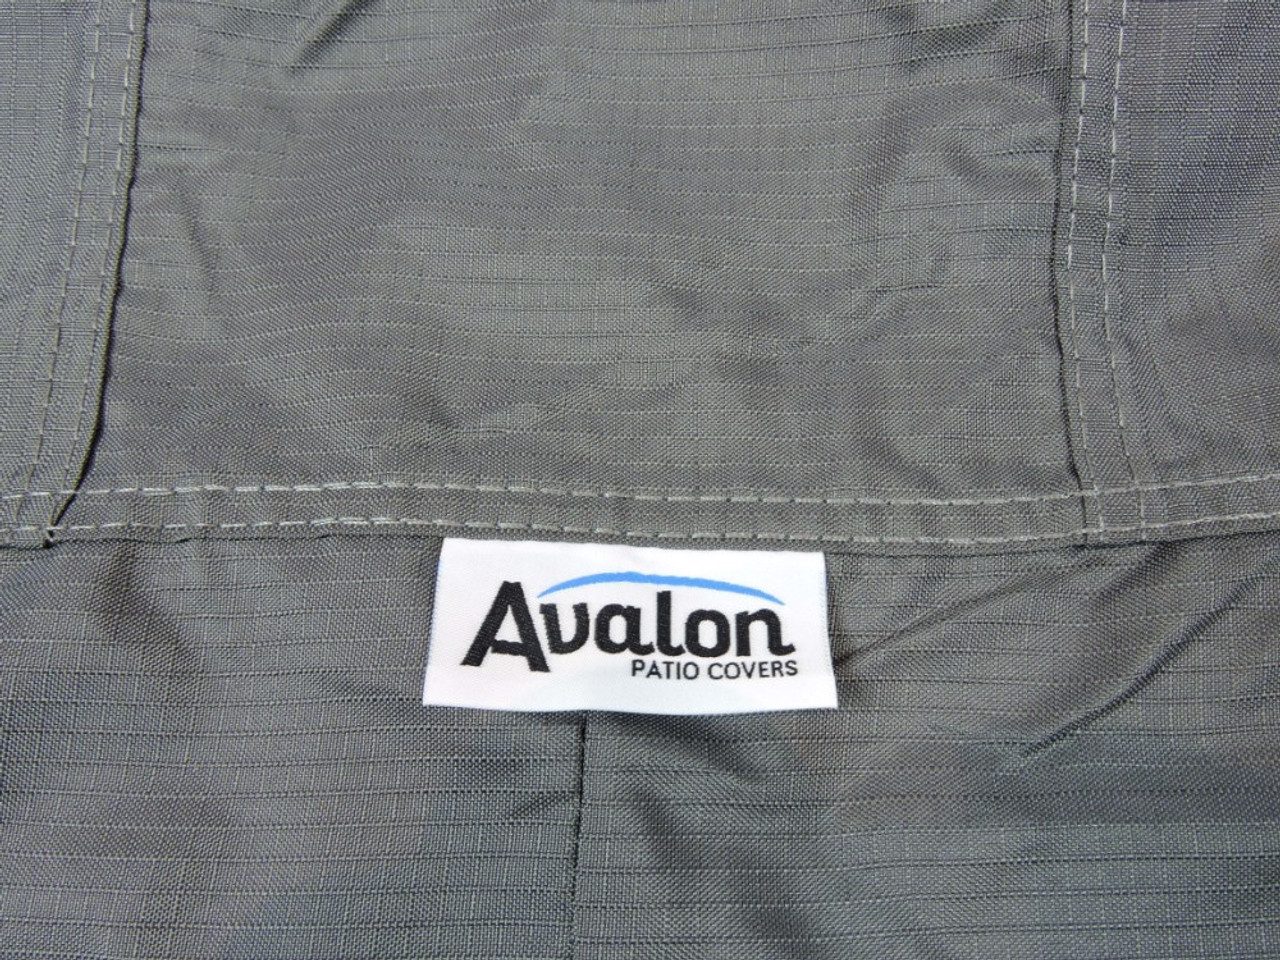 Exclusivité de la marque Avalon